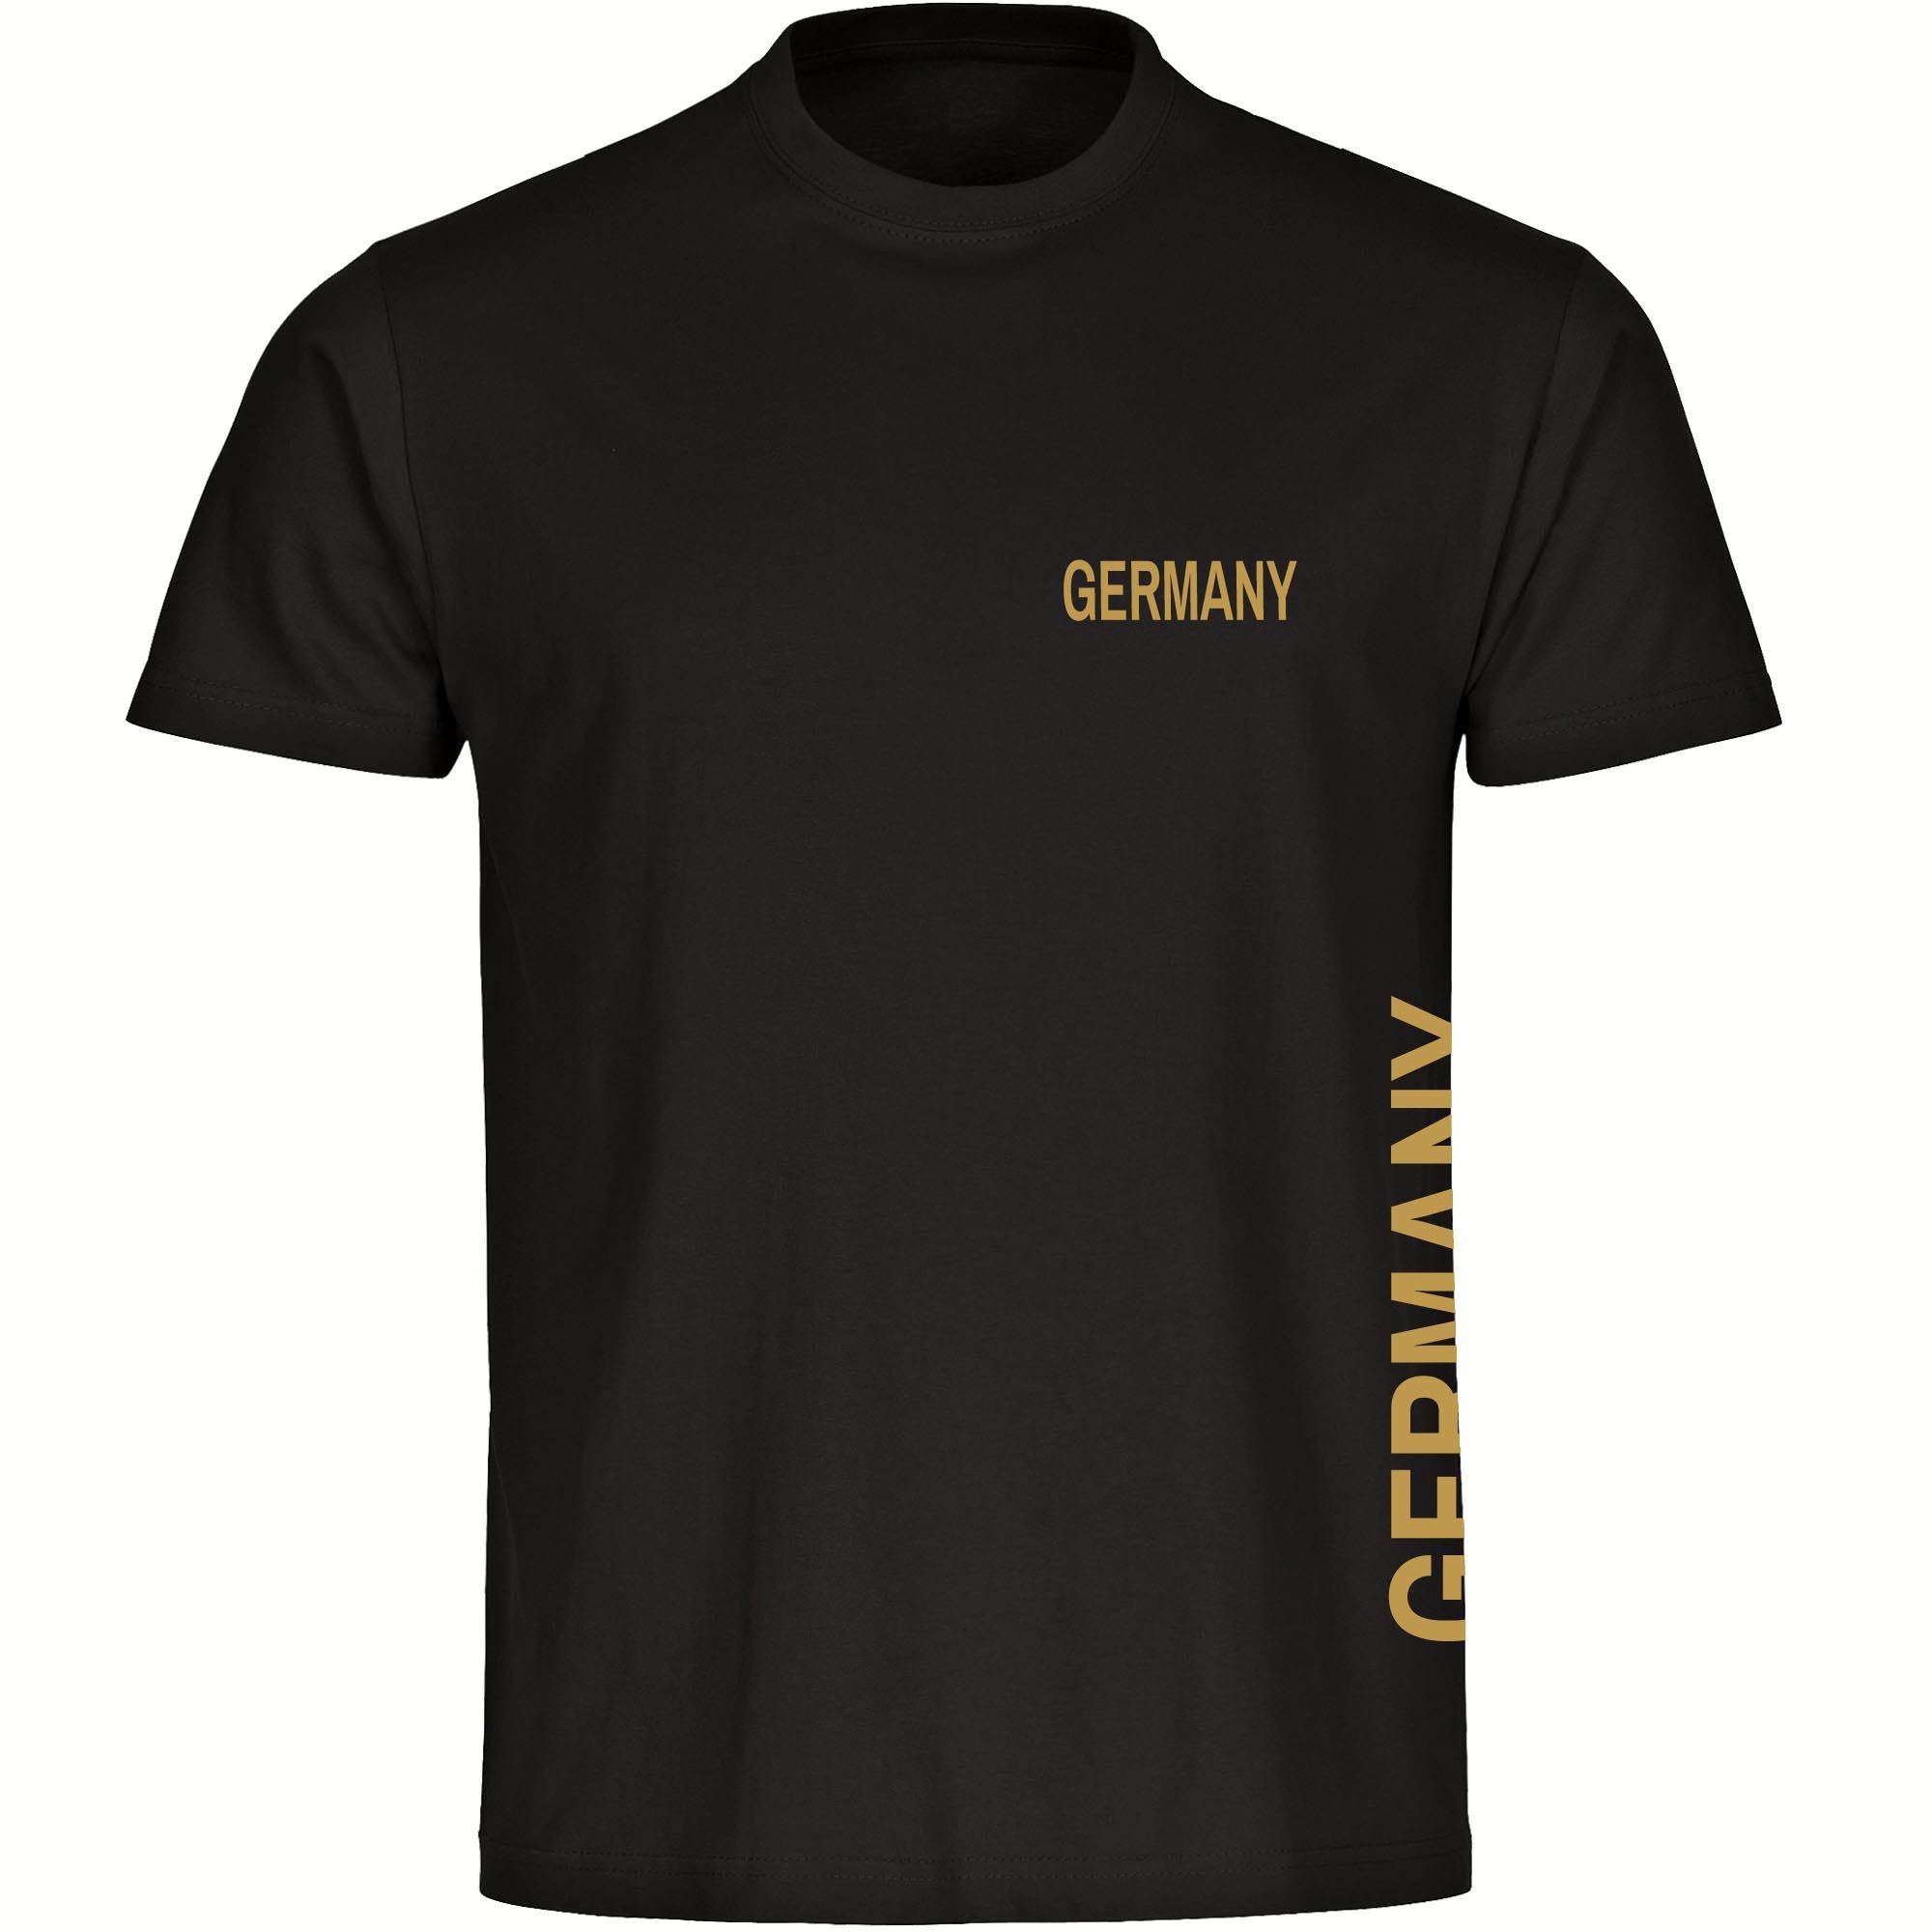 multifanshop T-Shirt Herren Germany - Brust & Seite Gold - Männer